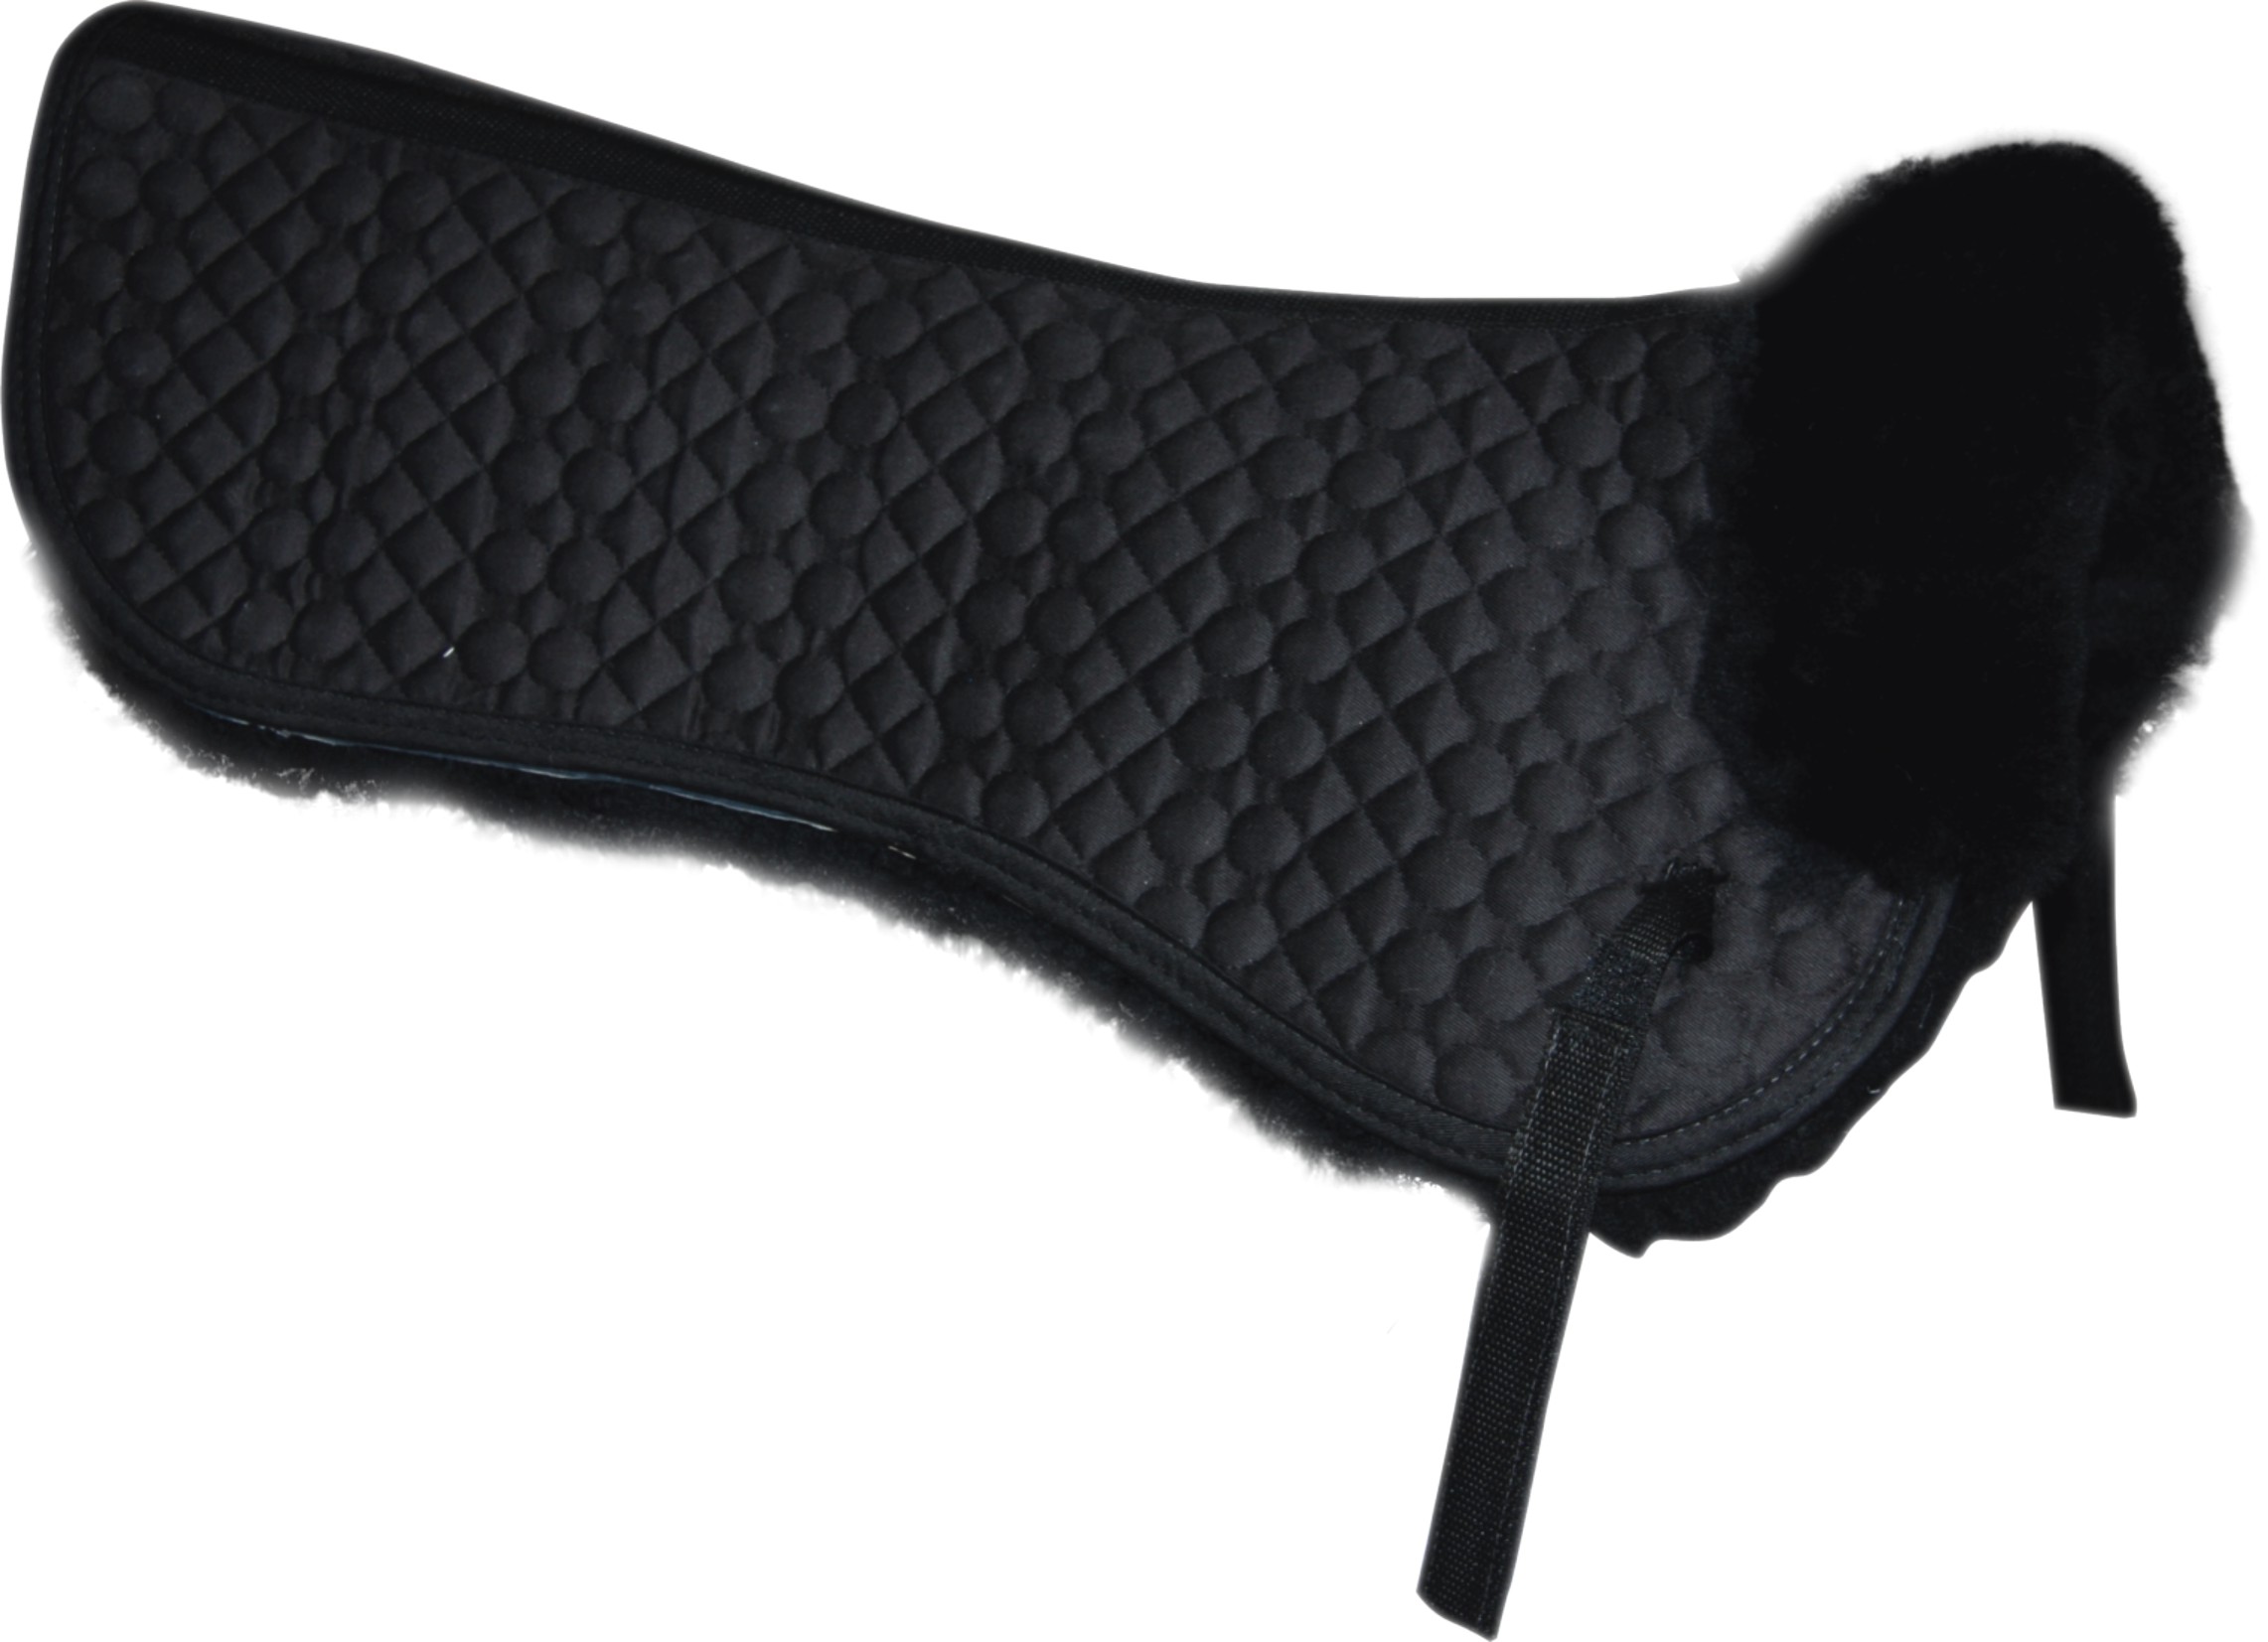 lambskin saddle pad Made in Korea